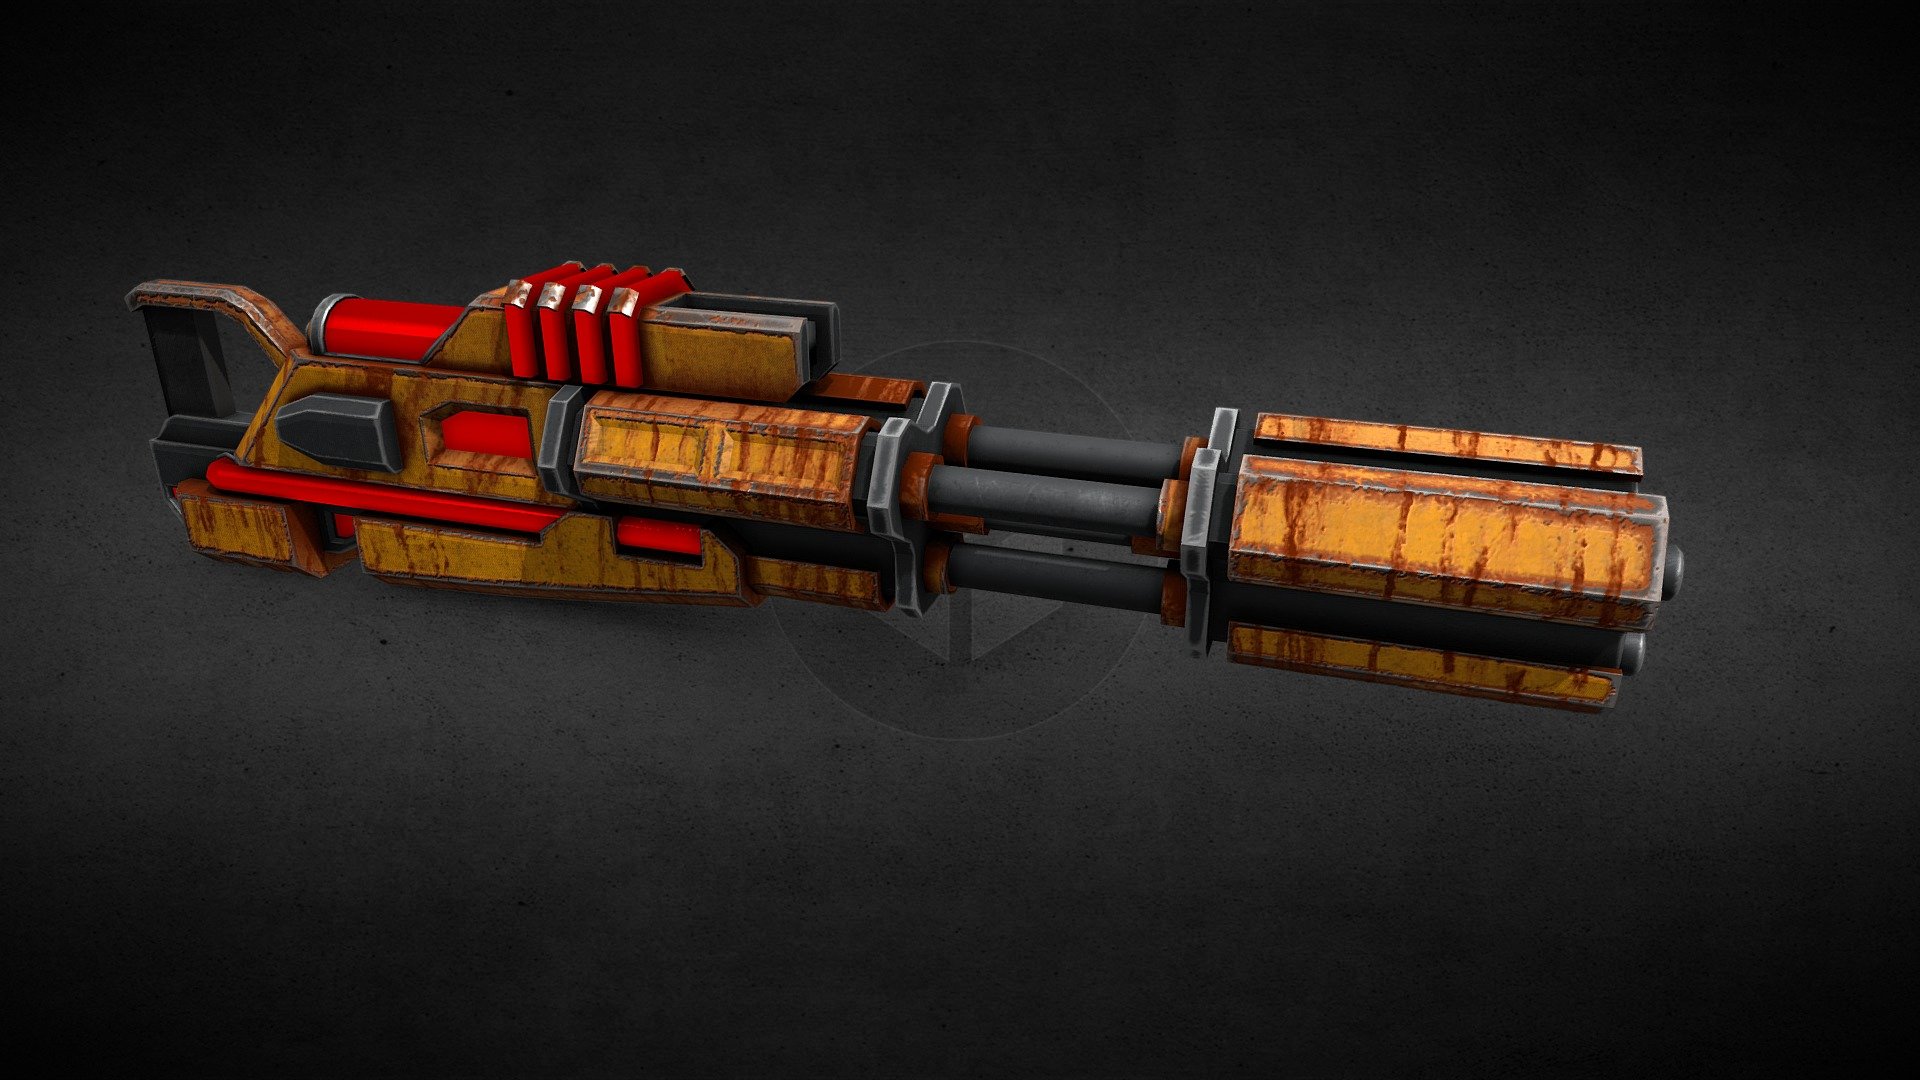 Scifi Gun - 3D model by ben.shields 3d model